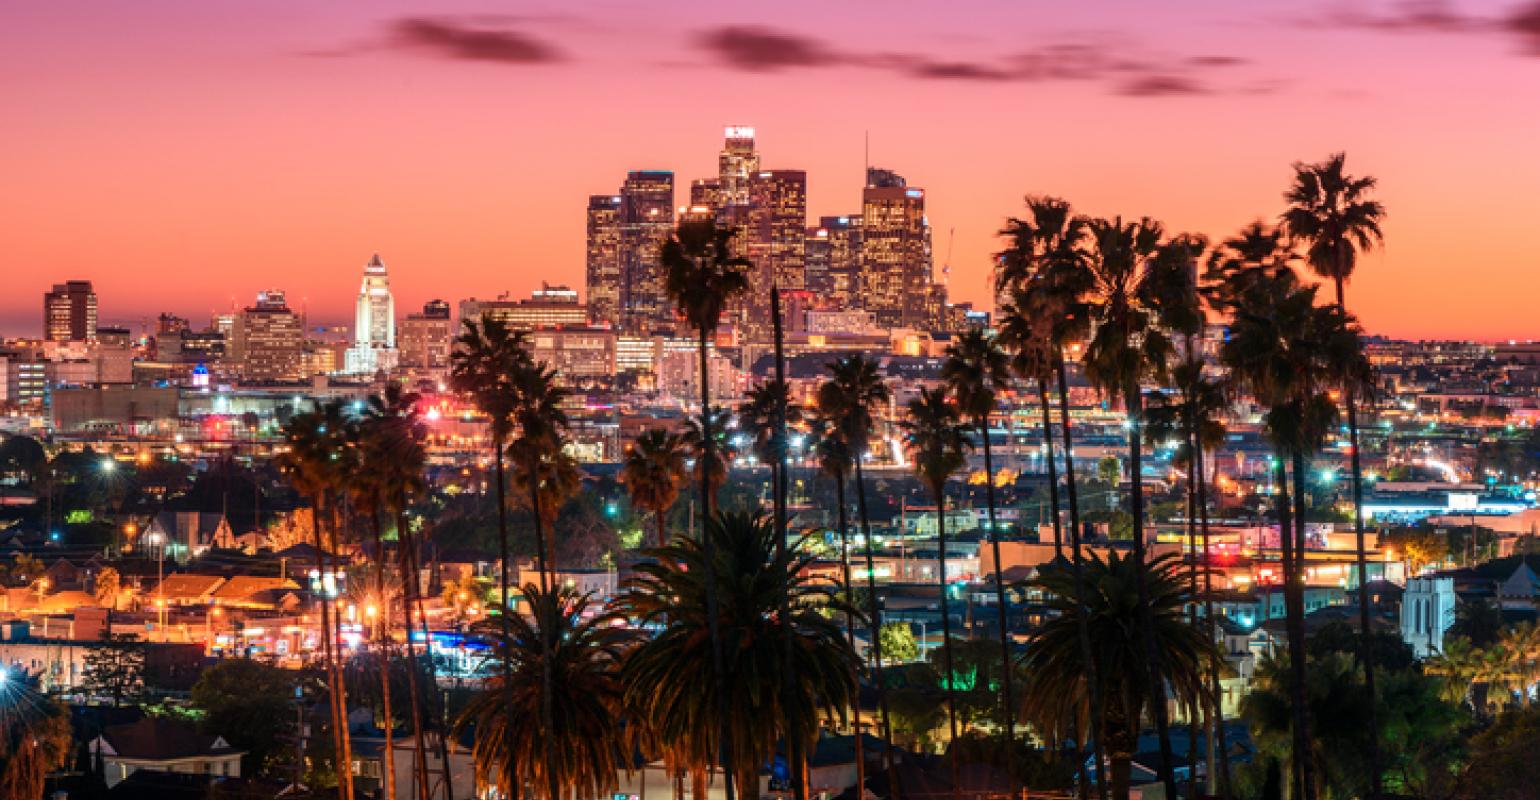 5 Best Rooftop Restaurants in Los Angeles [2021 UPDATE]